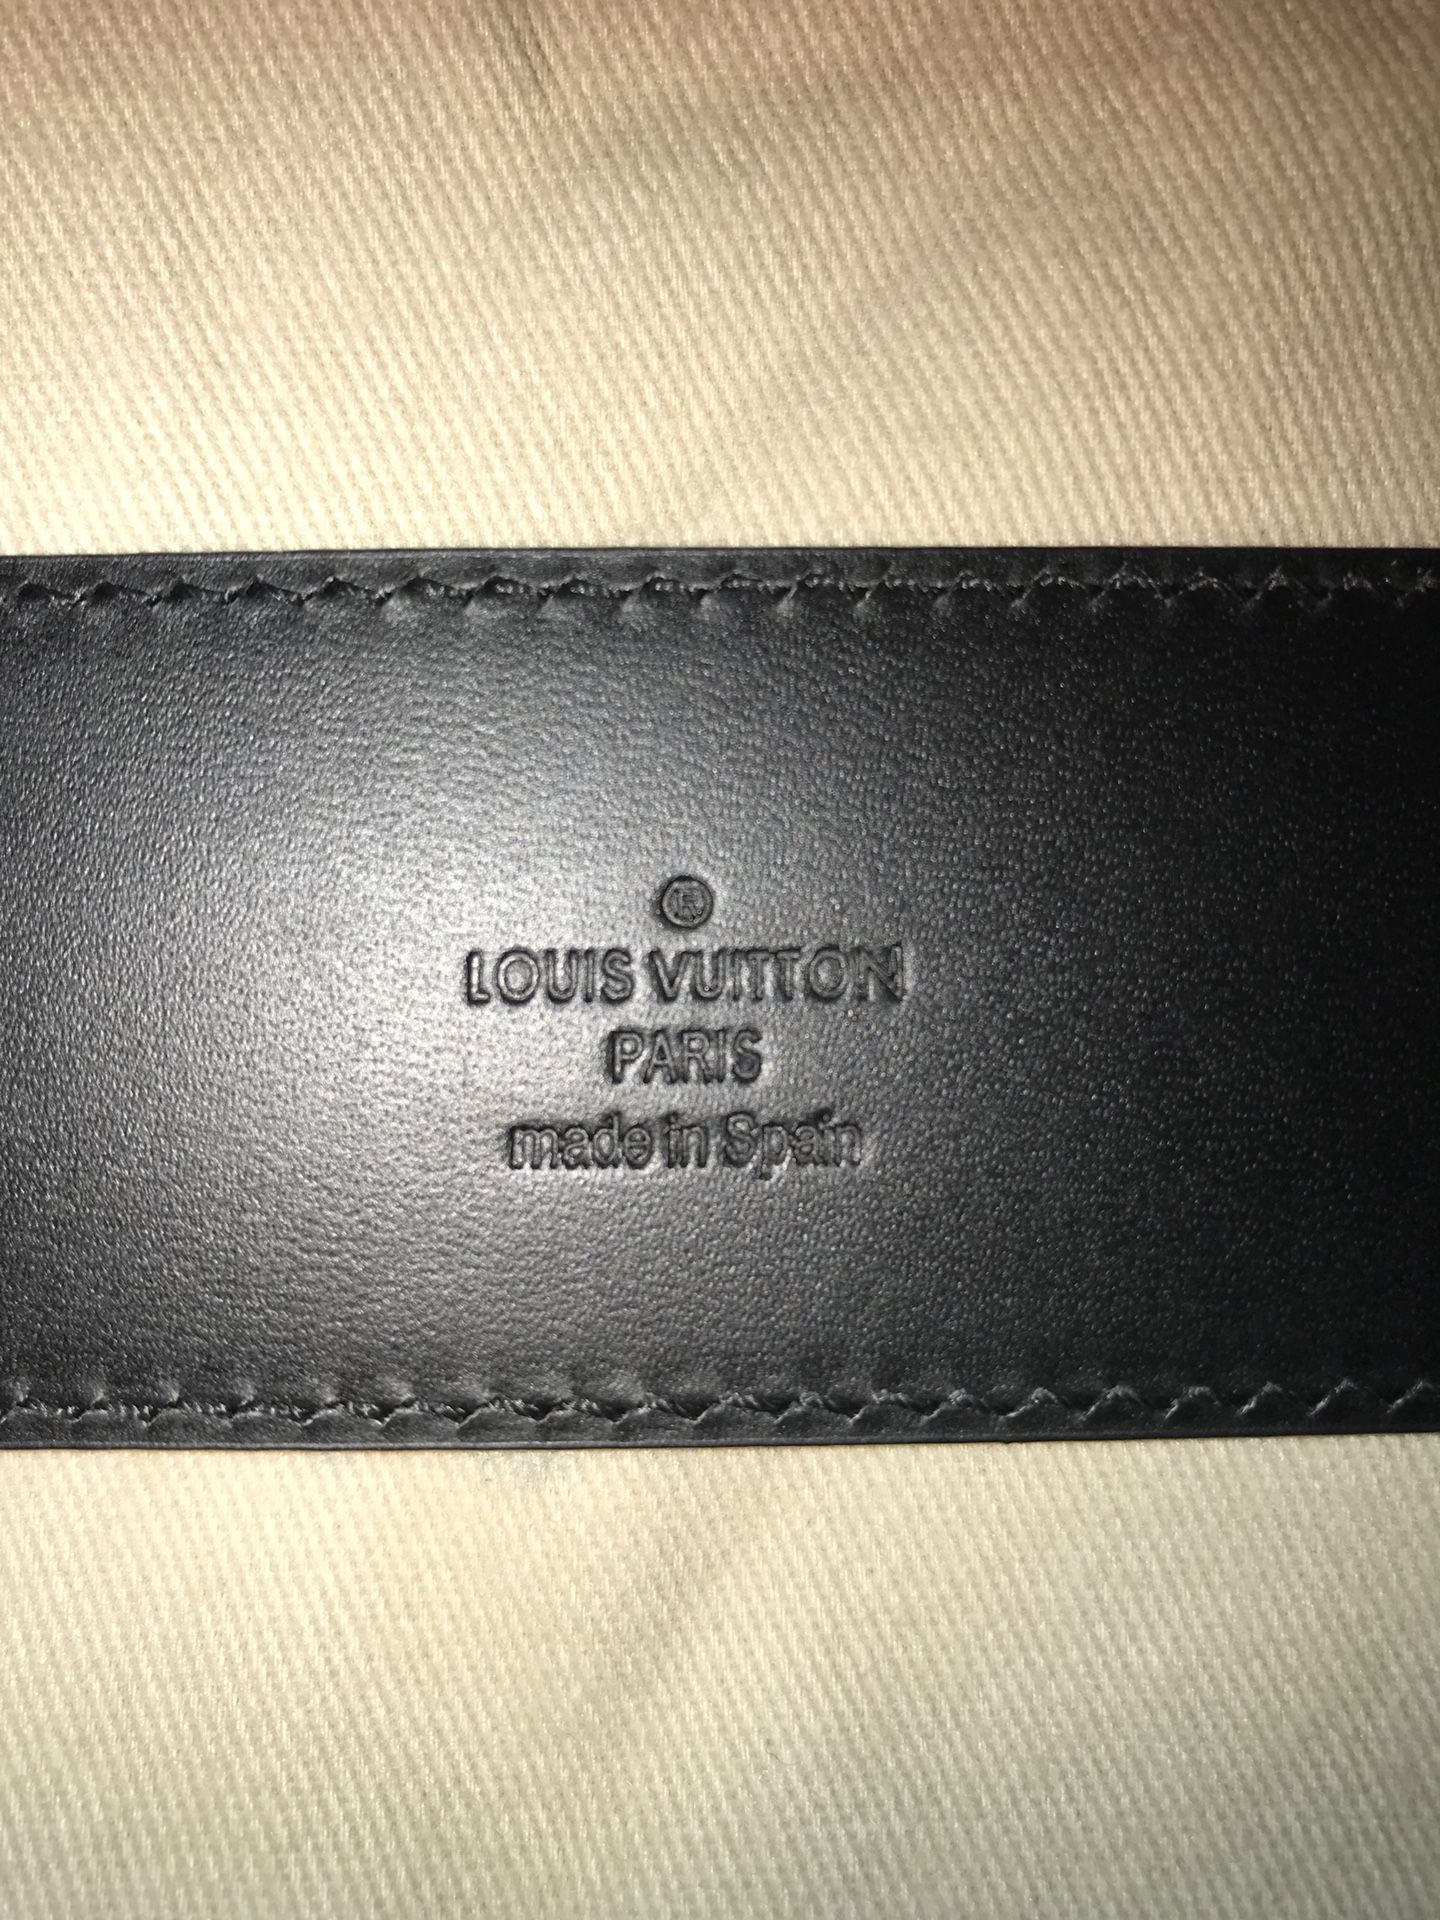 Louis Vuitton Damier Graphite Belt for Sale in Miramar, FL - OfferUp